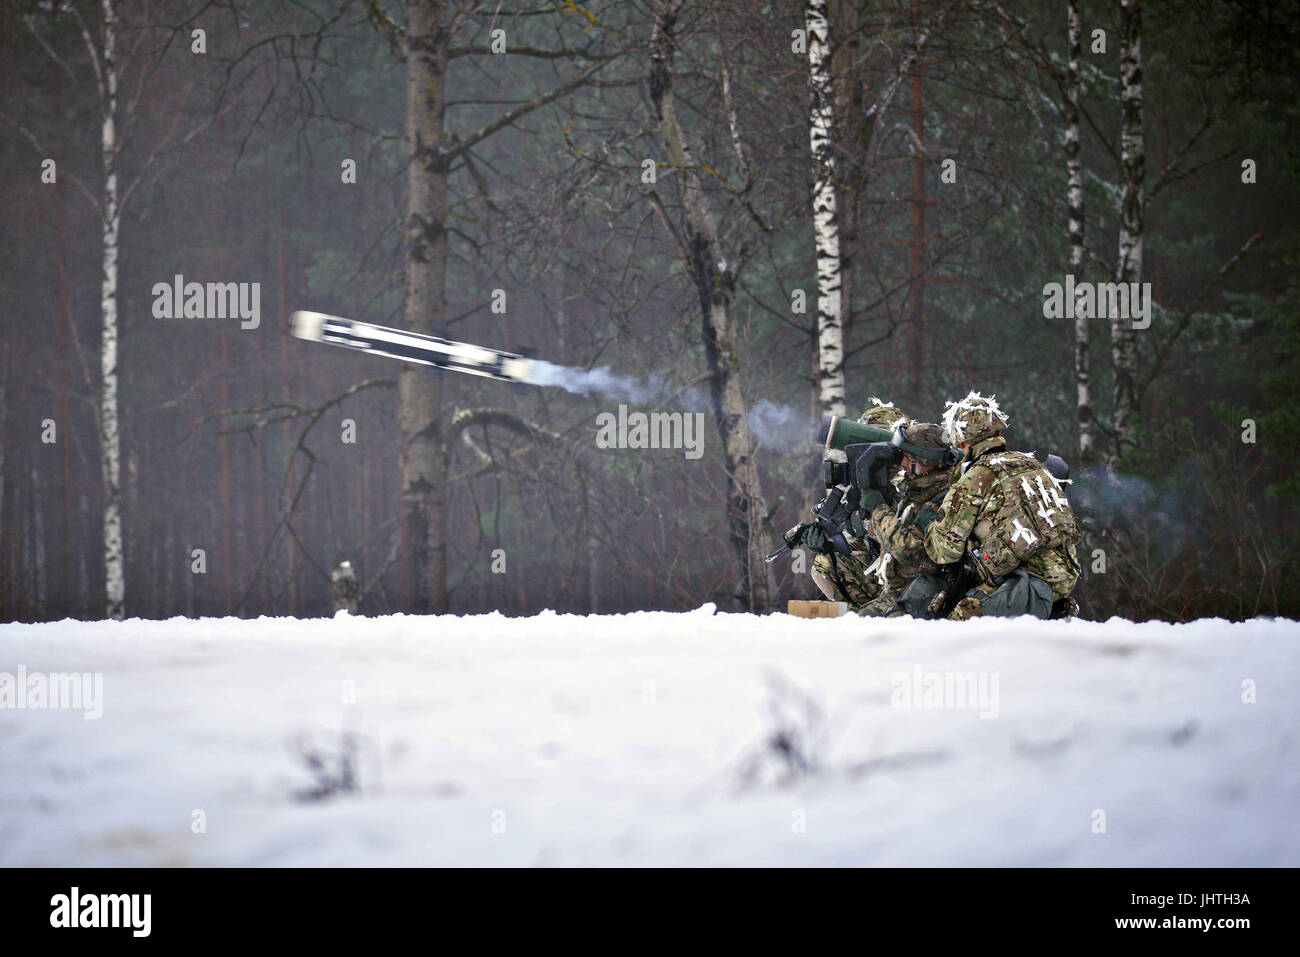 Des soldats américains tirer un missile Javelin dans la neige au cours d'un exercice de validation à la zone d'entraînement Grafenwoehr, 31 janvier 2017 à Grafenwoehr, Allemagne. (Photo de Javon Spence par Planetpix) Banque D'Images